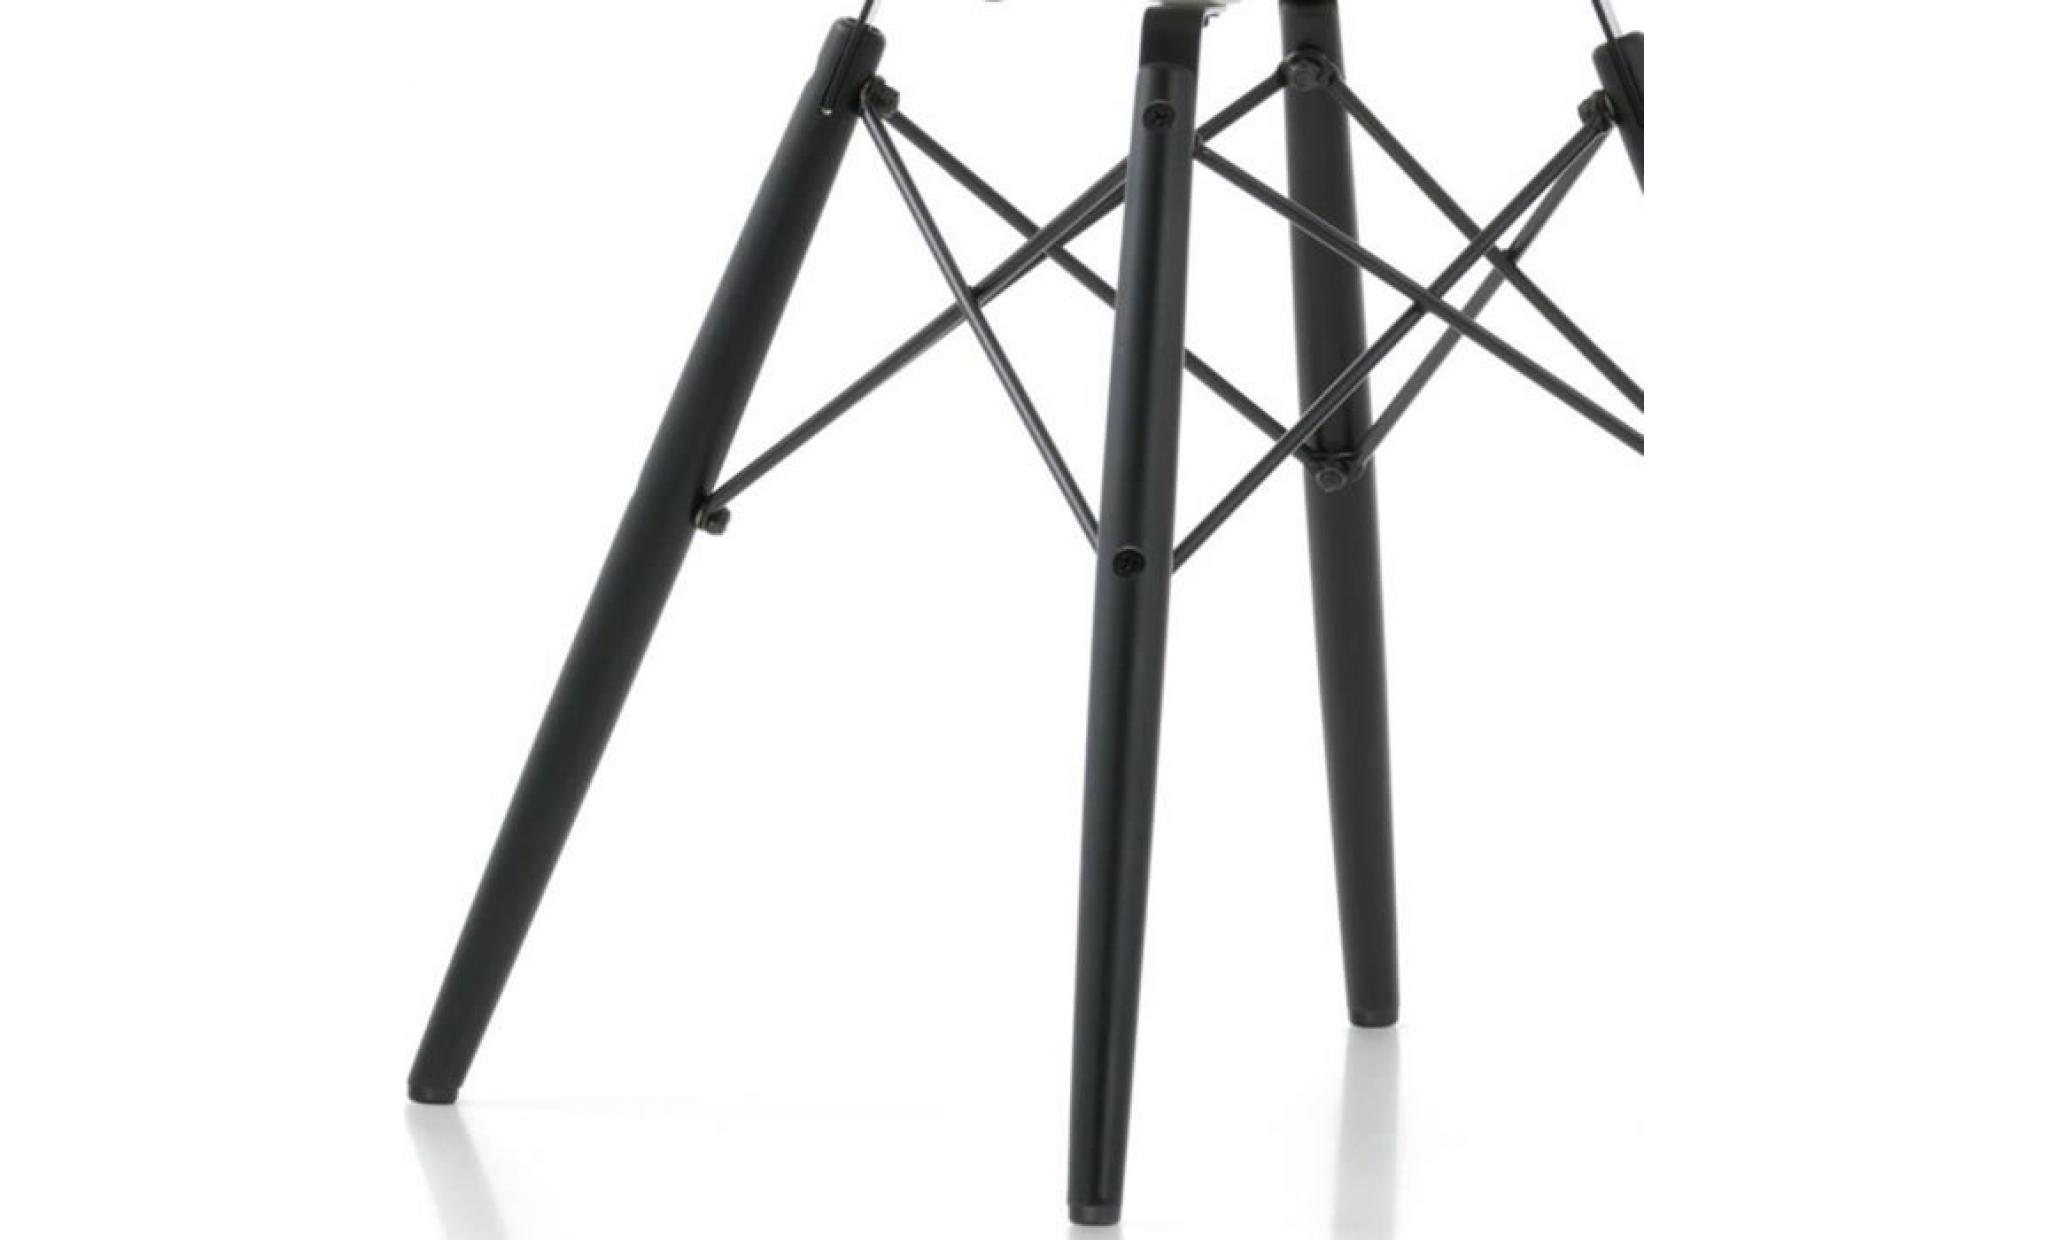 1 x fauteuil design  scandinave haut. 48 cm ultra violet pieds: bois vernis noyer decopresto dp dawd48 uv 1 pas cher